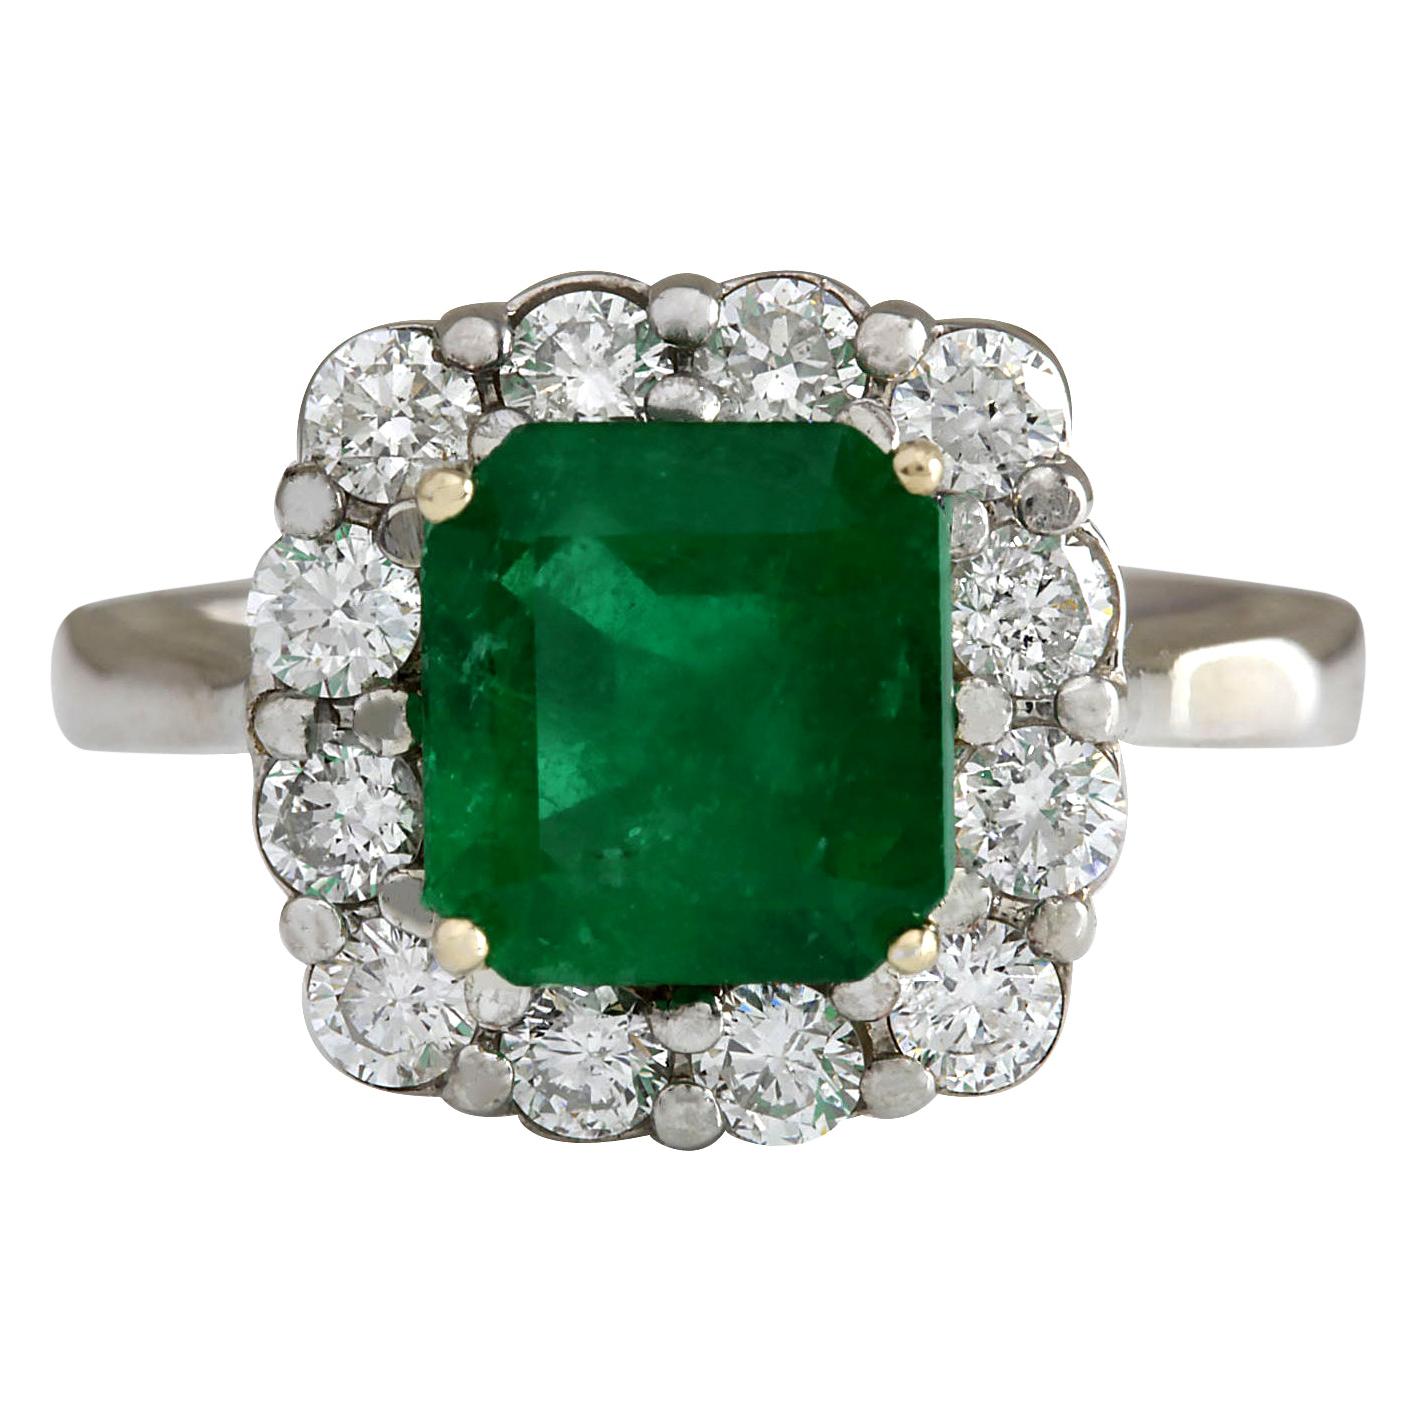 3.15 Carat Natural Emerald 18 Karat White Gold Diamond Ring